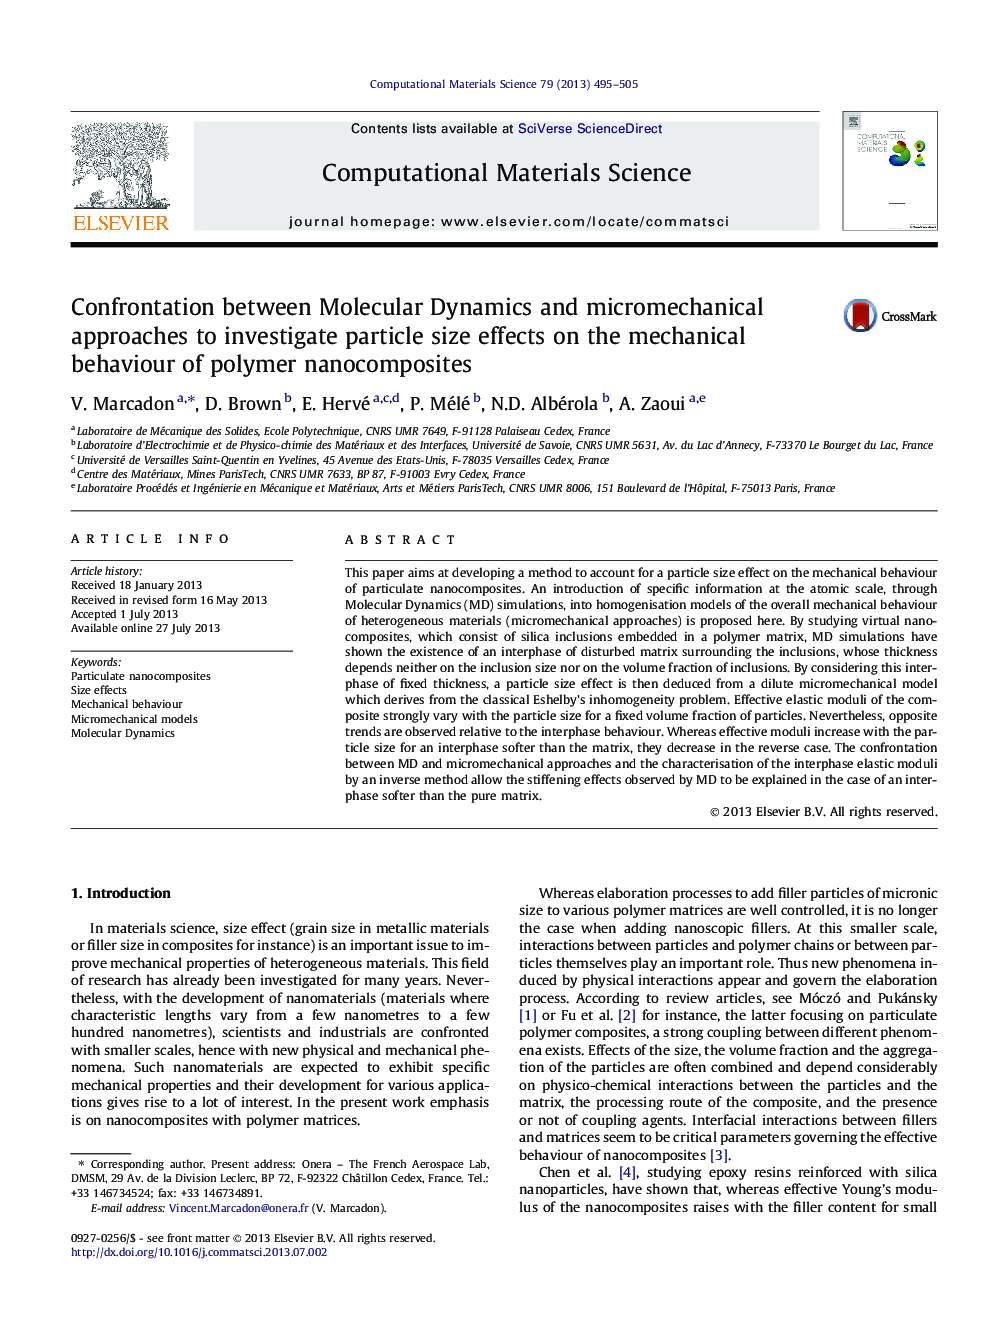 مقابله بین دینامیک مولکولی و روش های میکرومکانیکی برای بررسی اثرات اندازه ذرات بر رفتار مکانیکی نانوکامپوزیت های پلیمری 